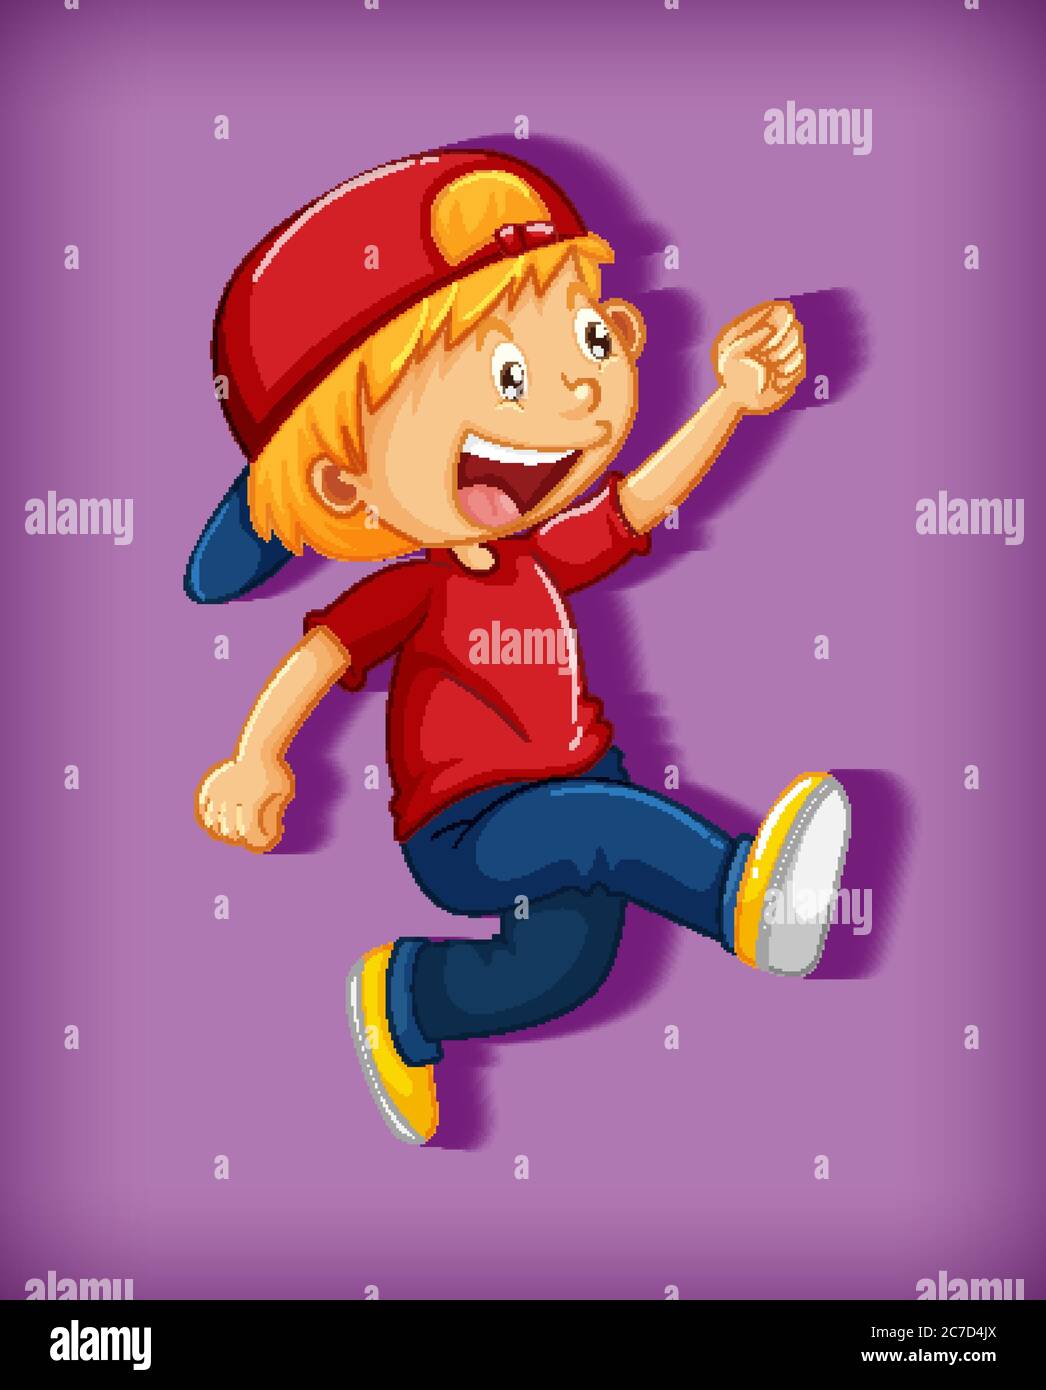 Mignon garçon portant une casquette rouge avec une prise d'étrangleur en  position de marche personnage de dessin animé isolé sur fond violet  illustration Image Vectorielle Stock - Alamy